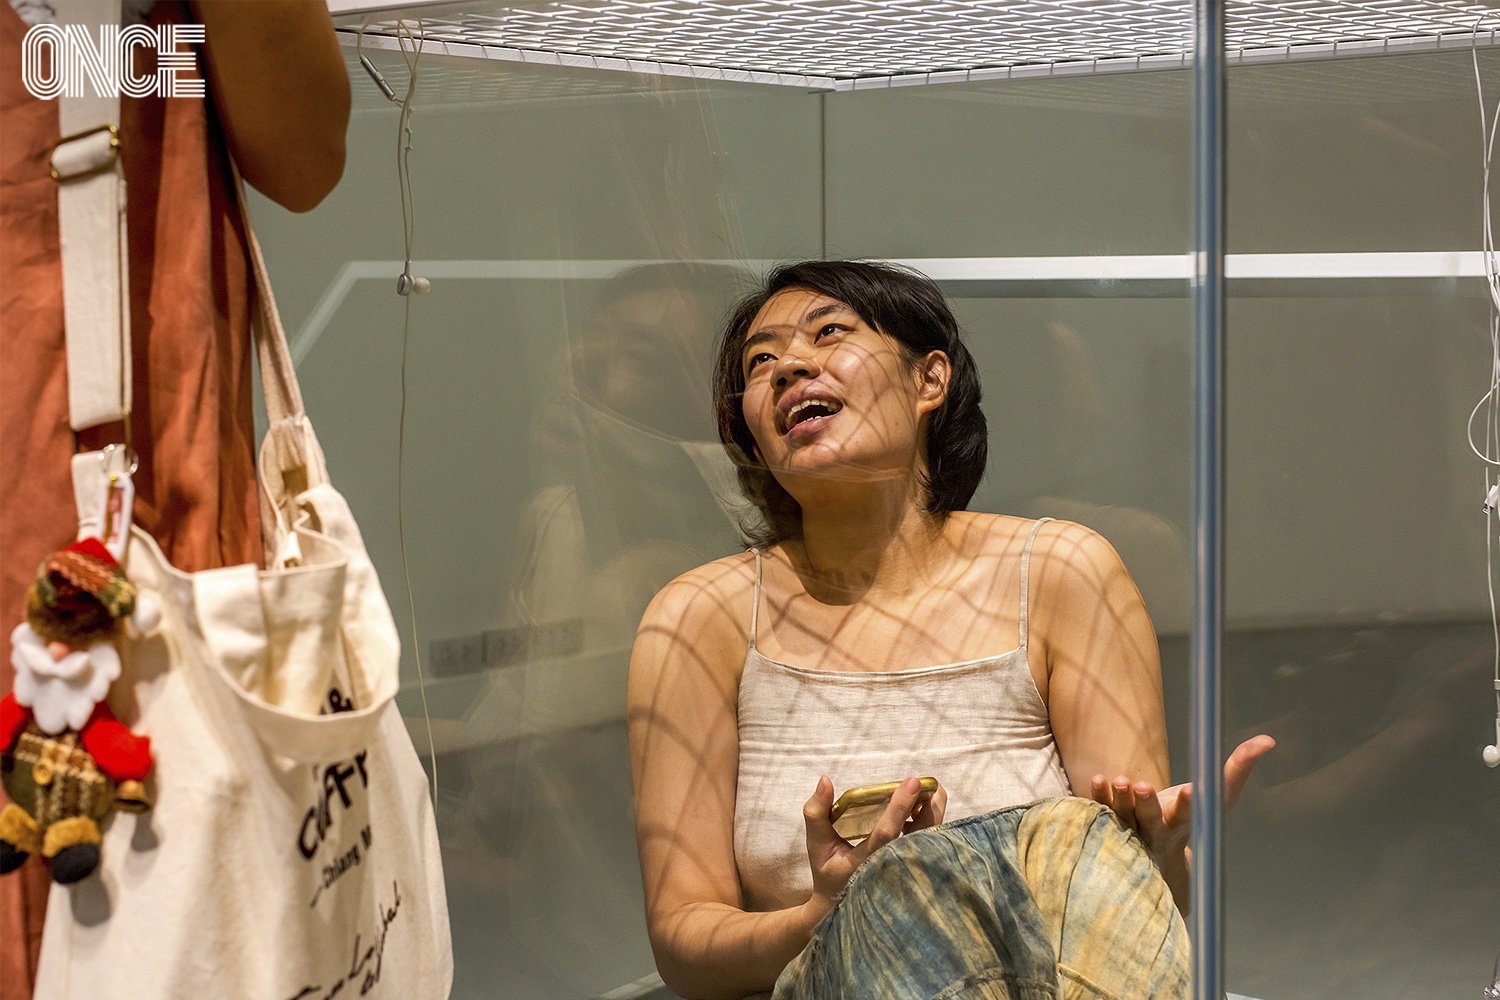 Performance Art จากน้ำอุ่น – พิชชาภา ห้องทดลองในกระจกสะท้อนชีวิต คนรุ่นใหม่ในโลกทุนนิยม